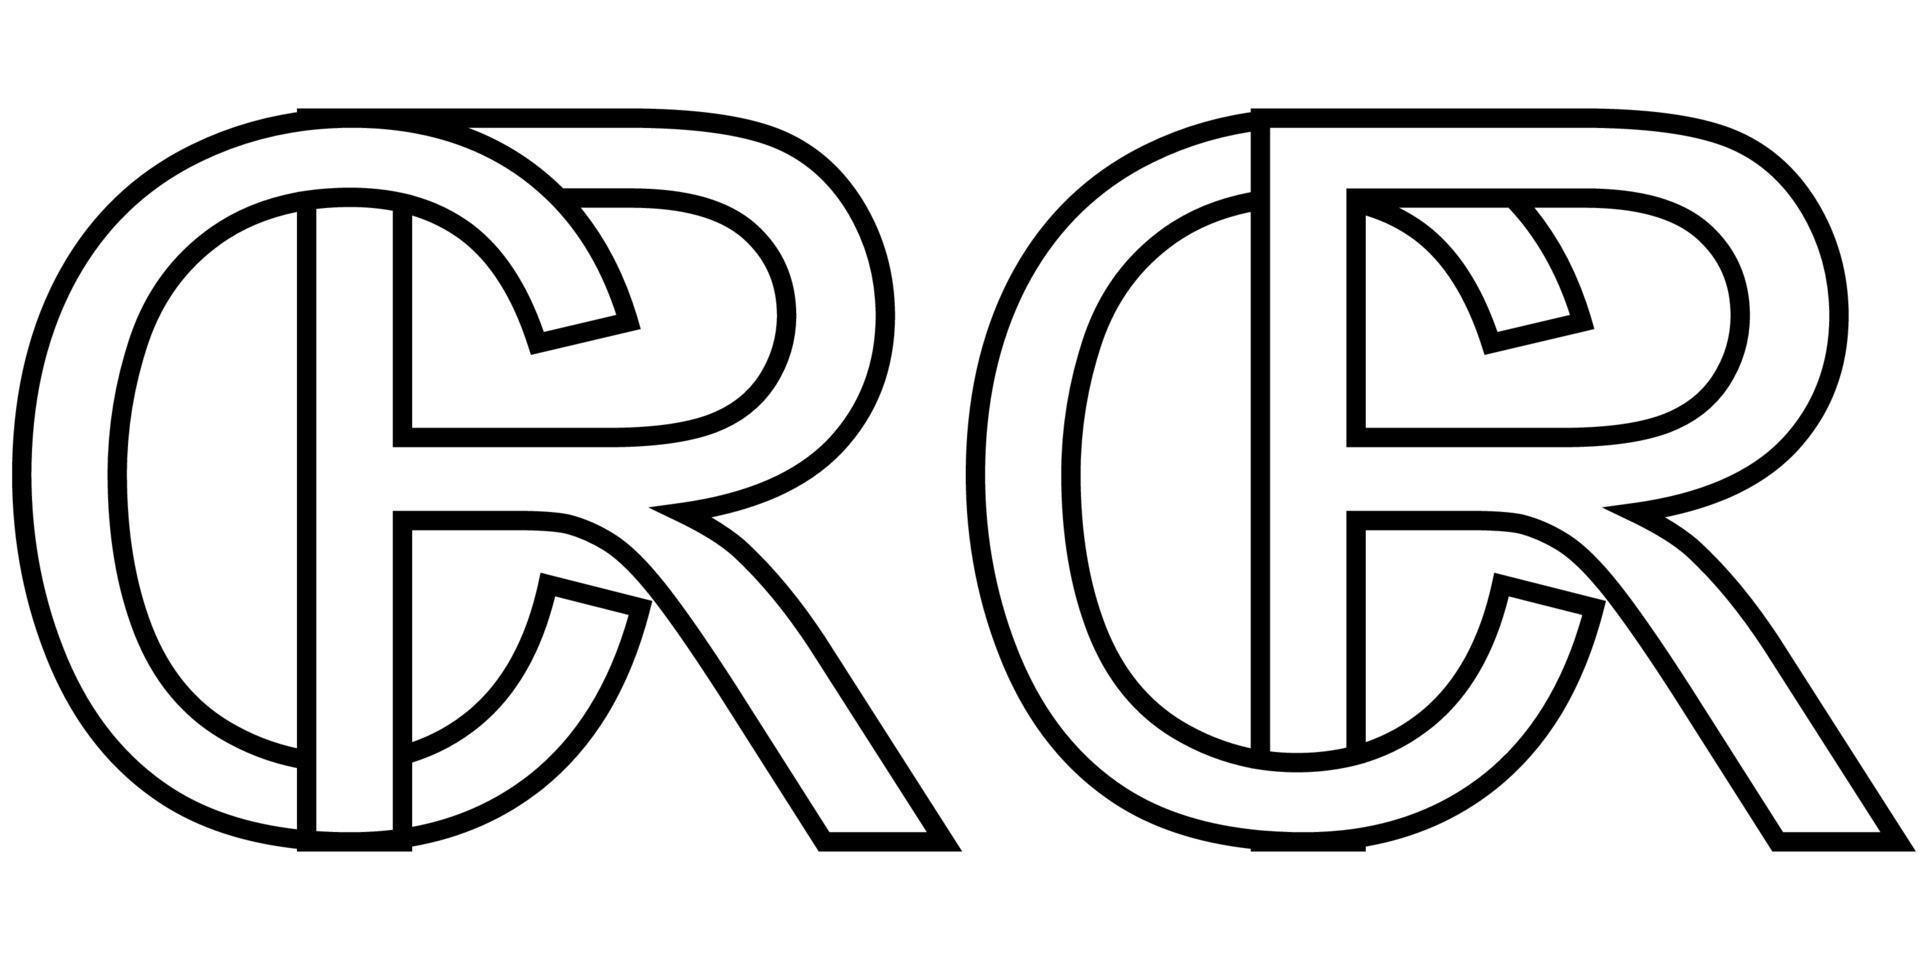 logo firmar rc cr icono firmar dos entrelazado letras r, C vector logo rc, cr primero capital letras modelo alfabeto r, C